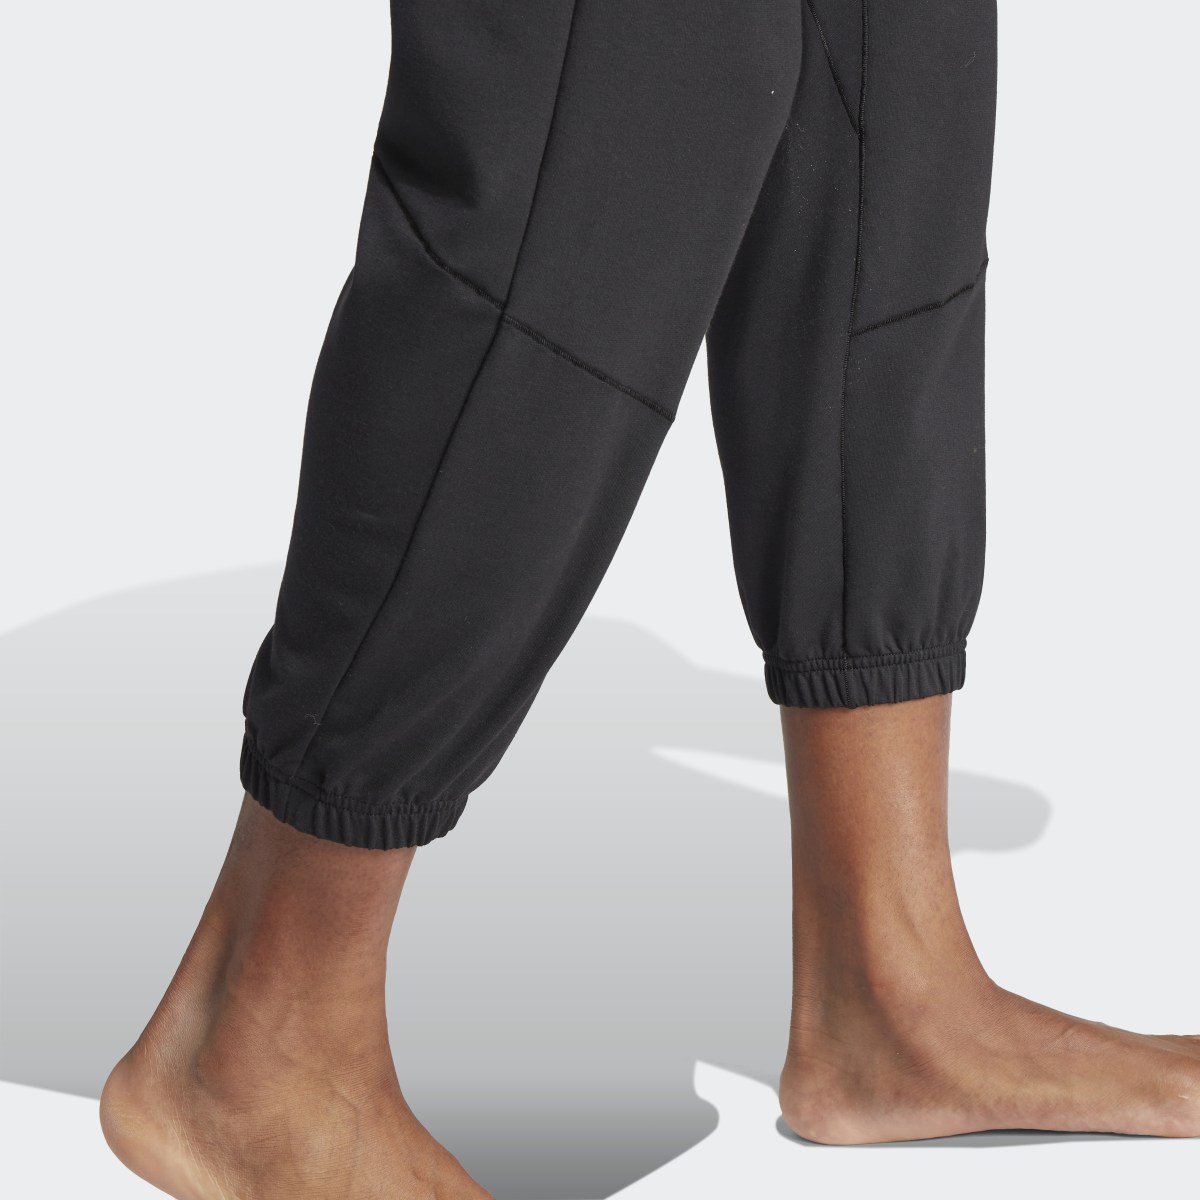 Adidas Designed for Training Yoga Training 7/8 Pants. 7